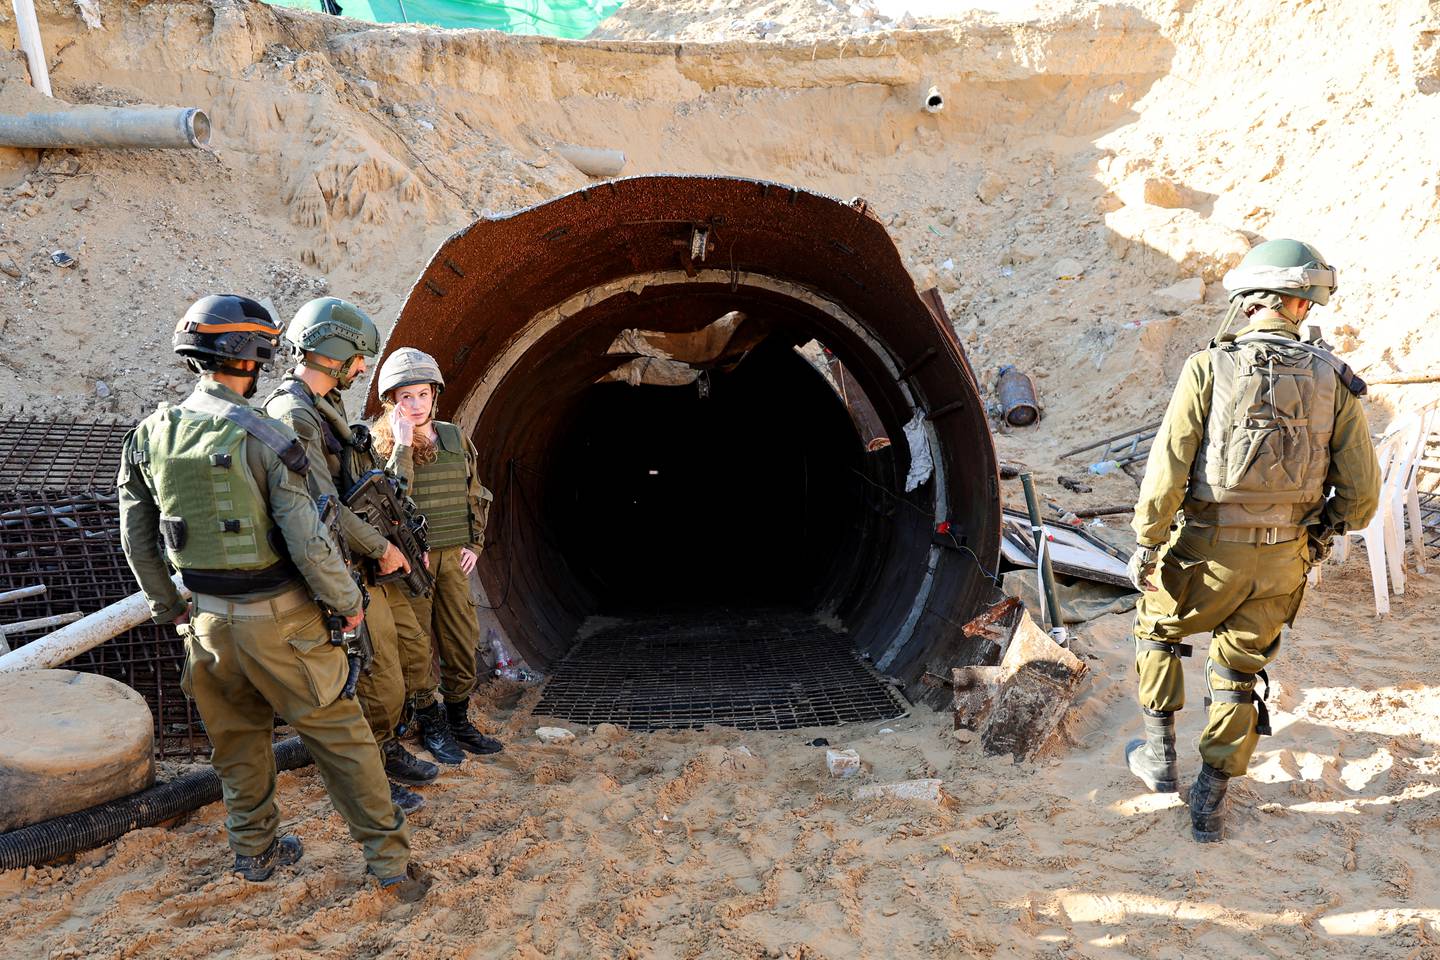 El ejército israelí anunció el descubrimiento de "el mayor túnel" subterráneo construido por Hamás en la Franja de Gaza, que se extiende por más de cuatro kilómetros y desemboca a unos 400 metros del punto de paso de Erez, entre Israel y el norte de Gaza.